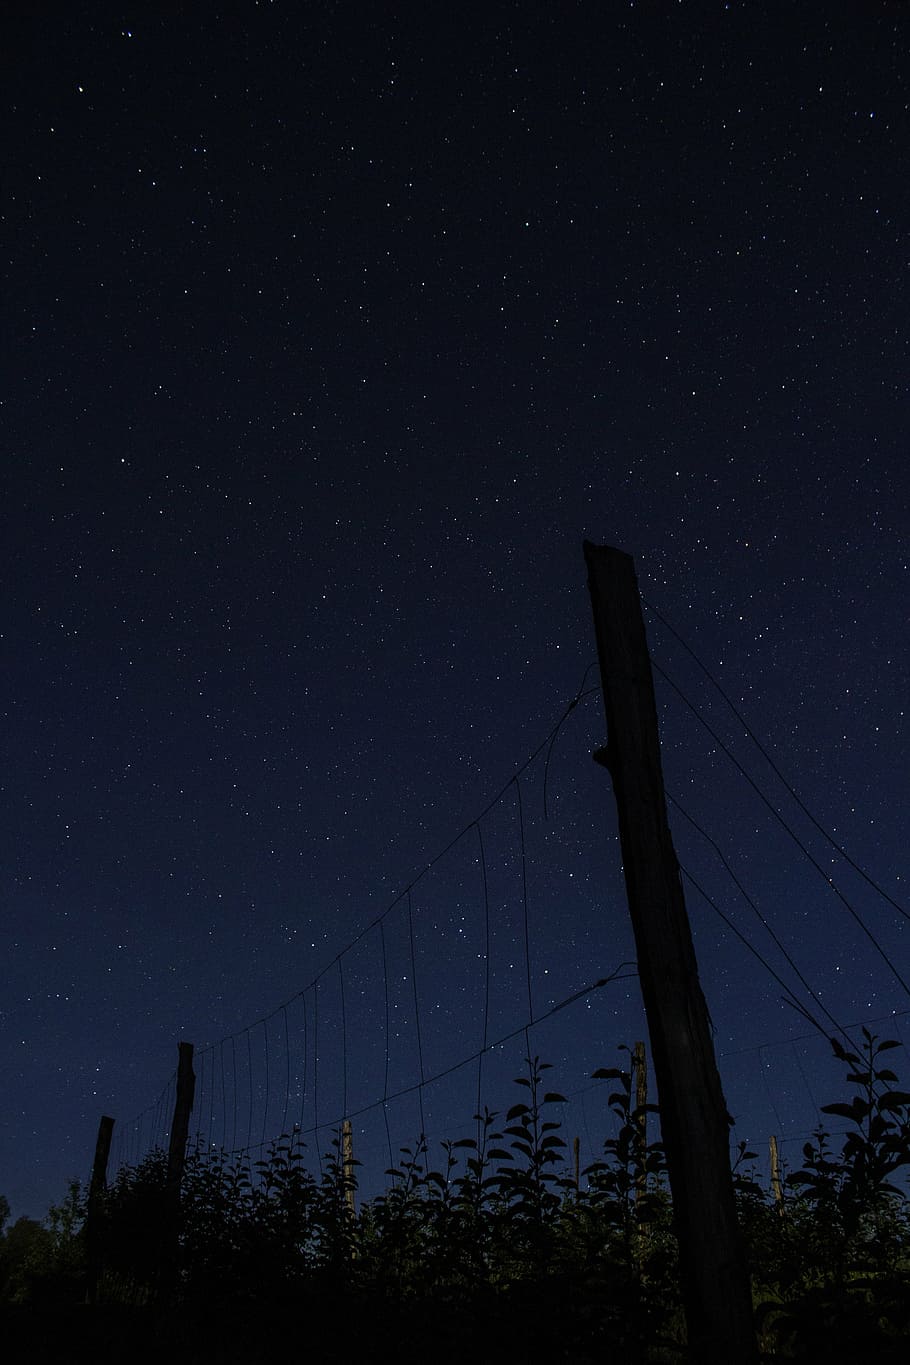 茶色の木製フェンス, 夜, 暗い, 星, 天体写真, 写真, 木, 屋外, ケーブル, 人なし